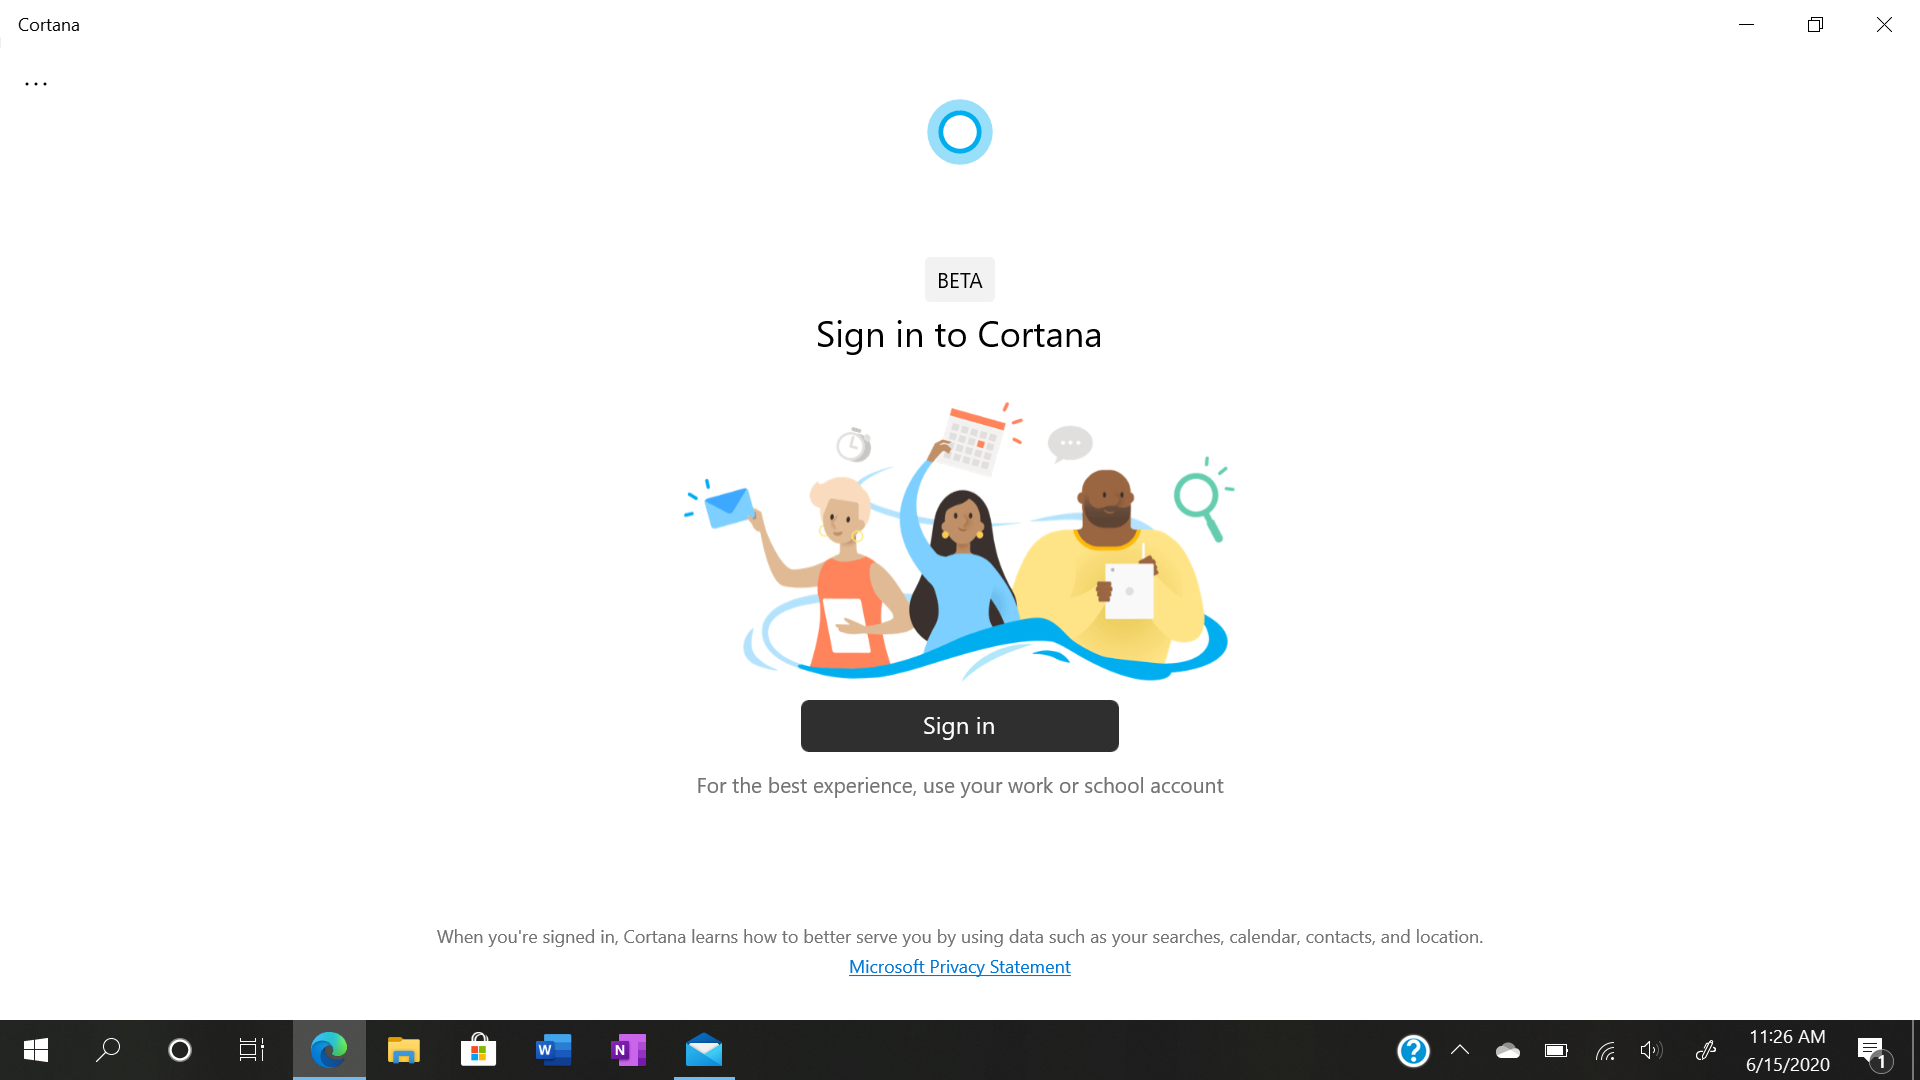 Cortana "BETA" WON'T sign in c572dcf6-da9d-47c2-9681-ec6f85e15bc1?upload=true.png